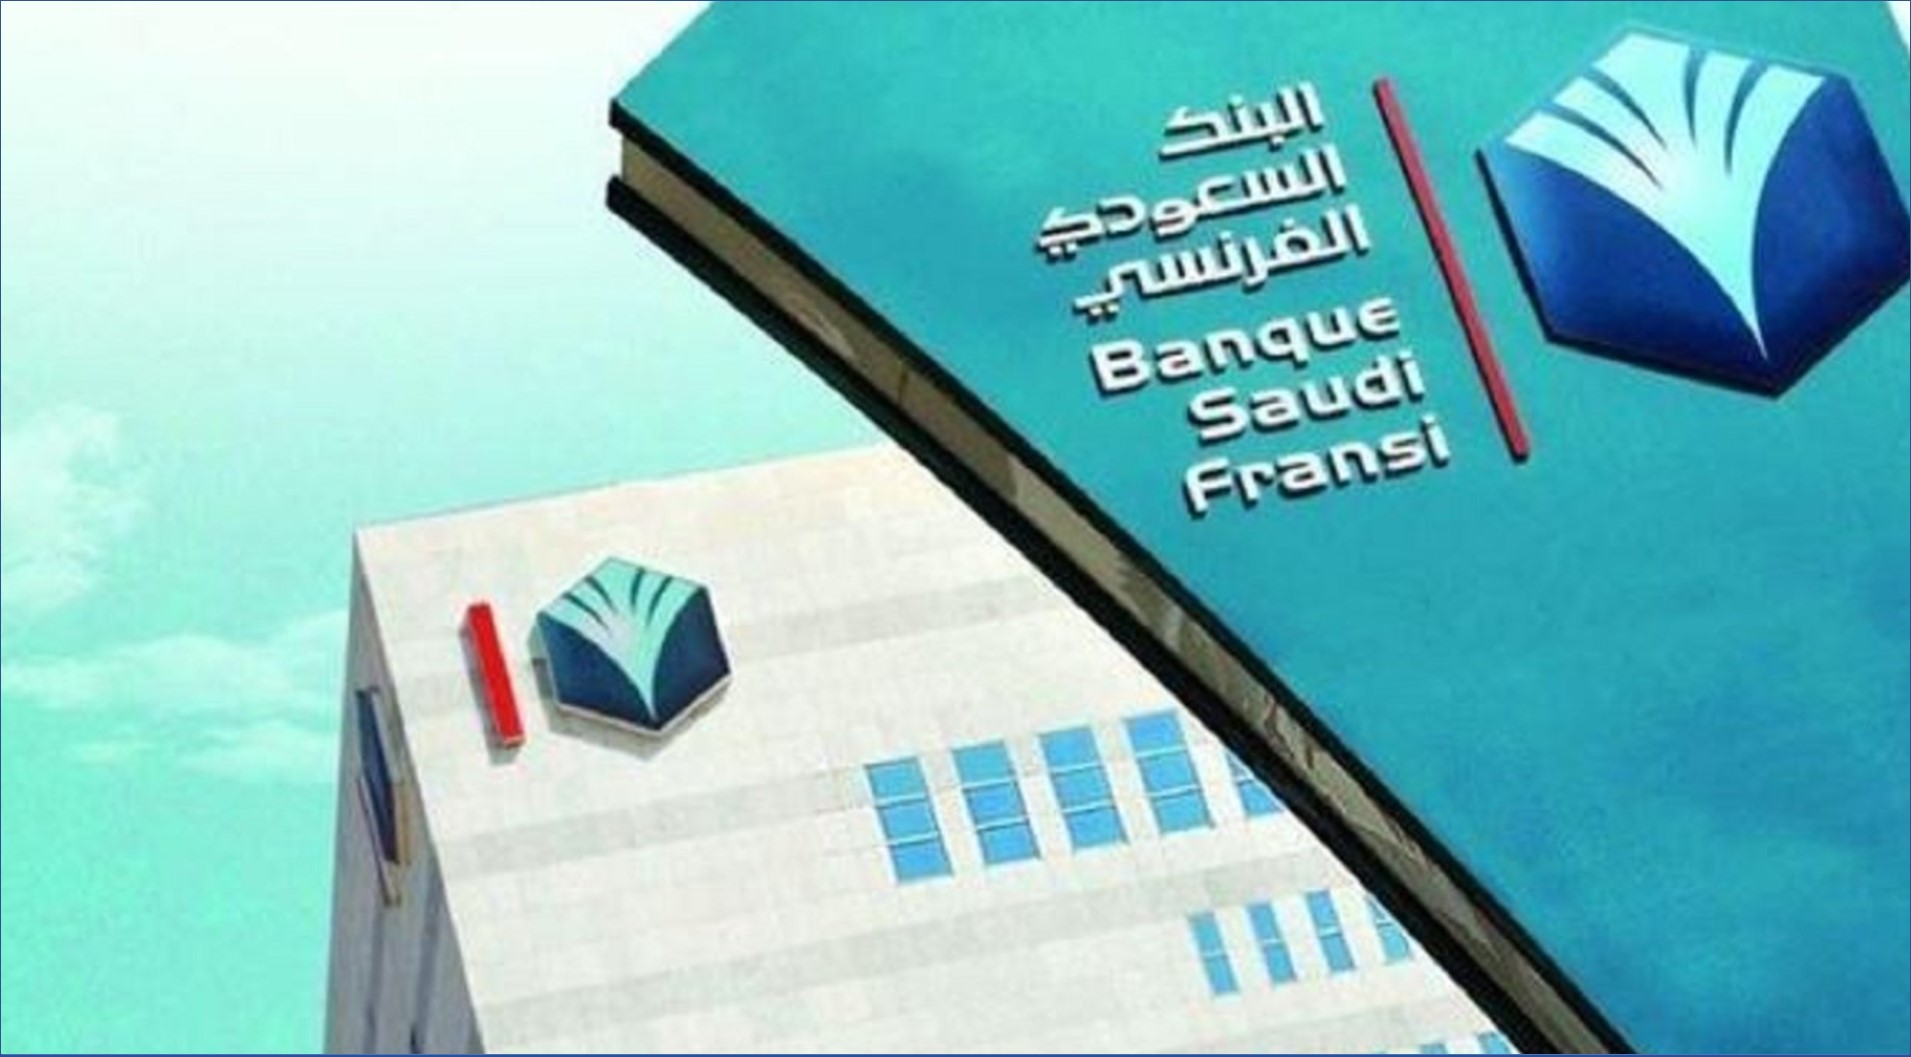 وظائف البنك السعودي الفرنسي للثانوية فأعلى بدون خبرة